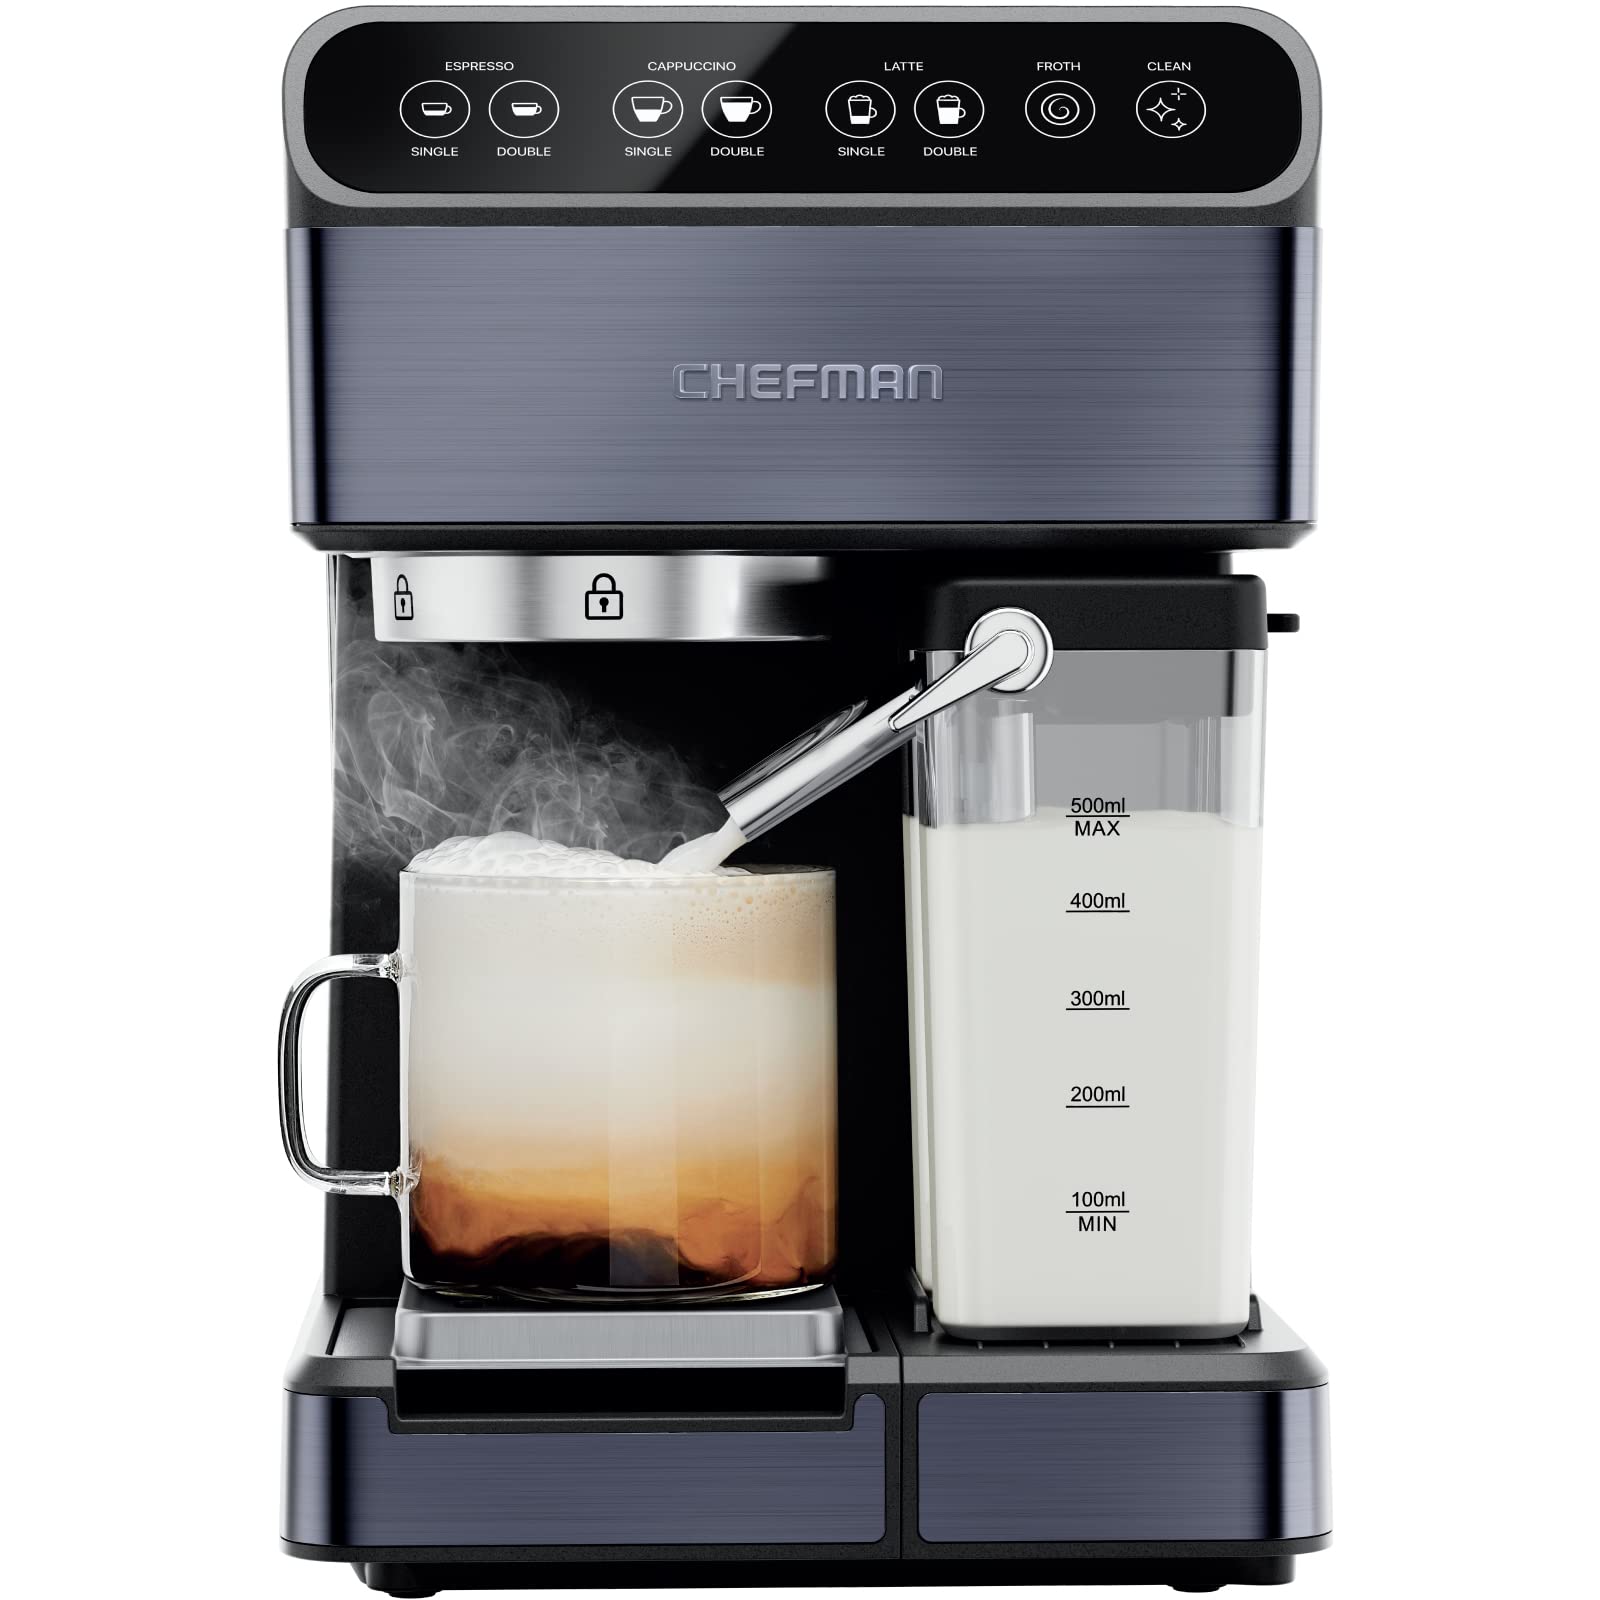 Chefman 6-in-1 Espresso Machine with Steamer